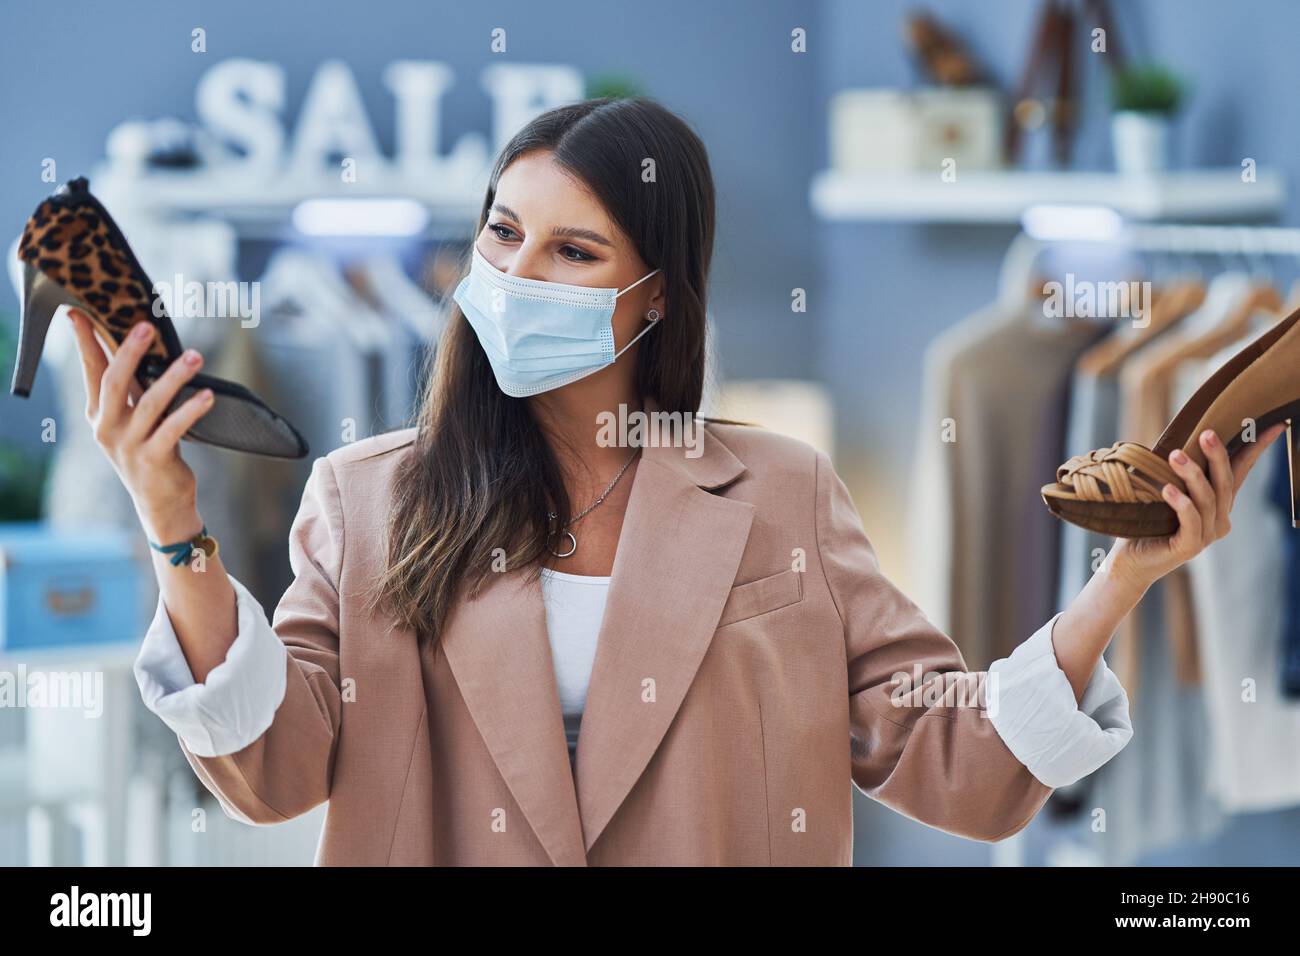 Junge nette Mädchen im Geschäft während des Einkaufens halten Schuhe tragen Maske Stockfoto